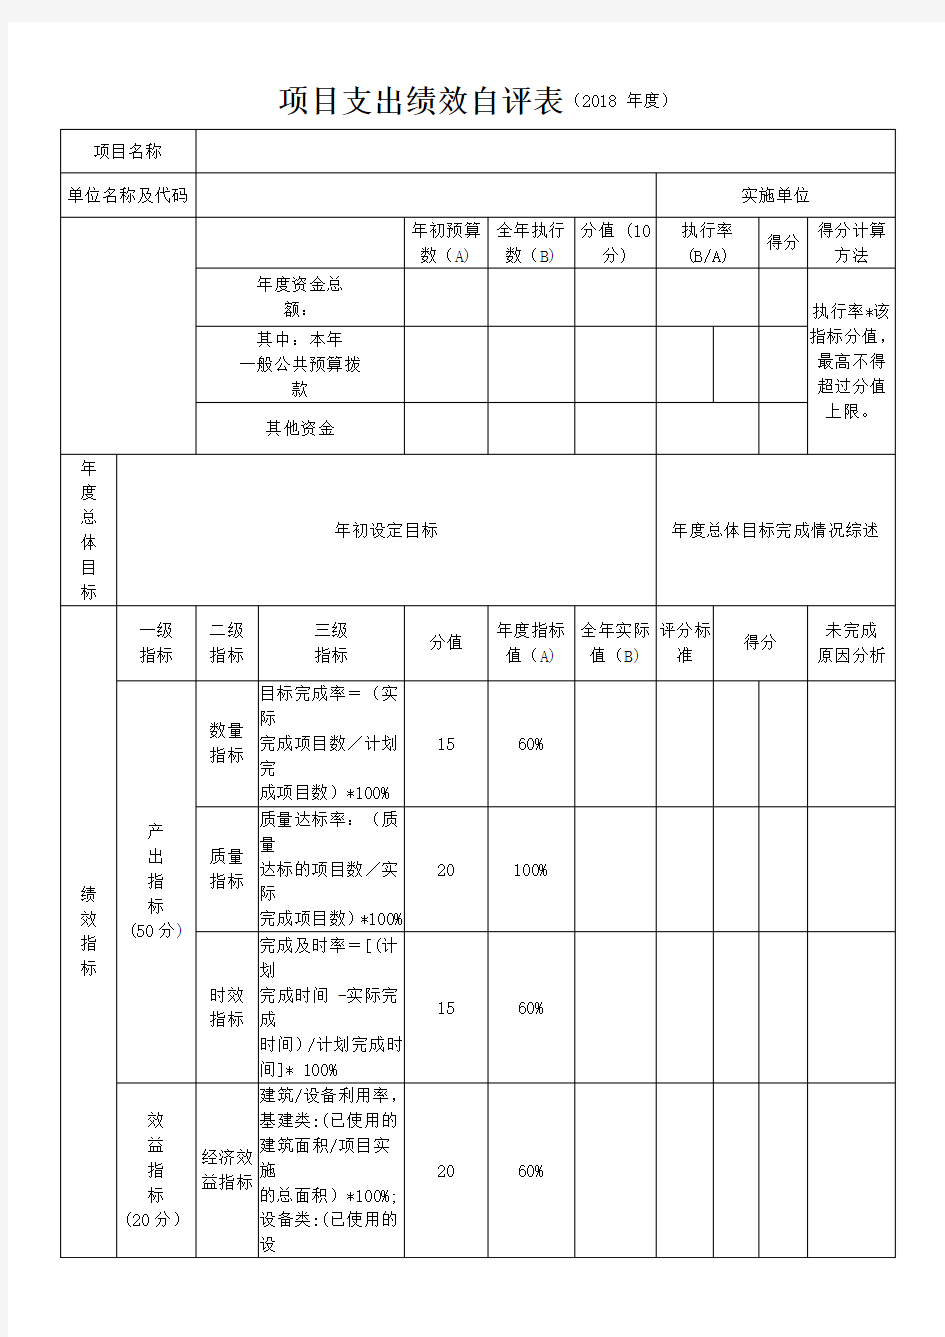 2018年度江西省教育厅部门预算项目支出绩效自评表